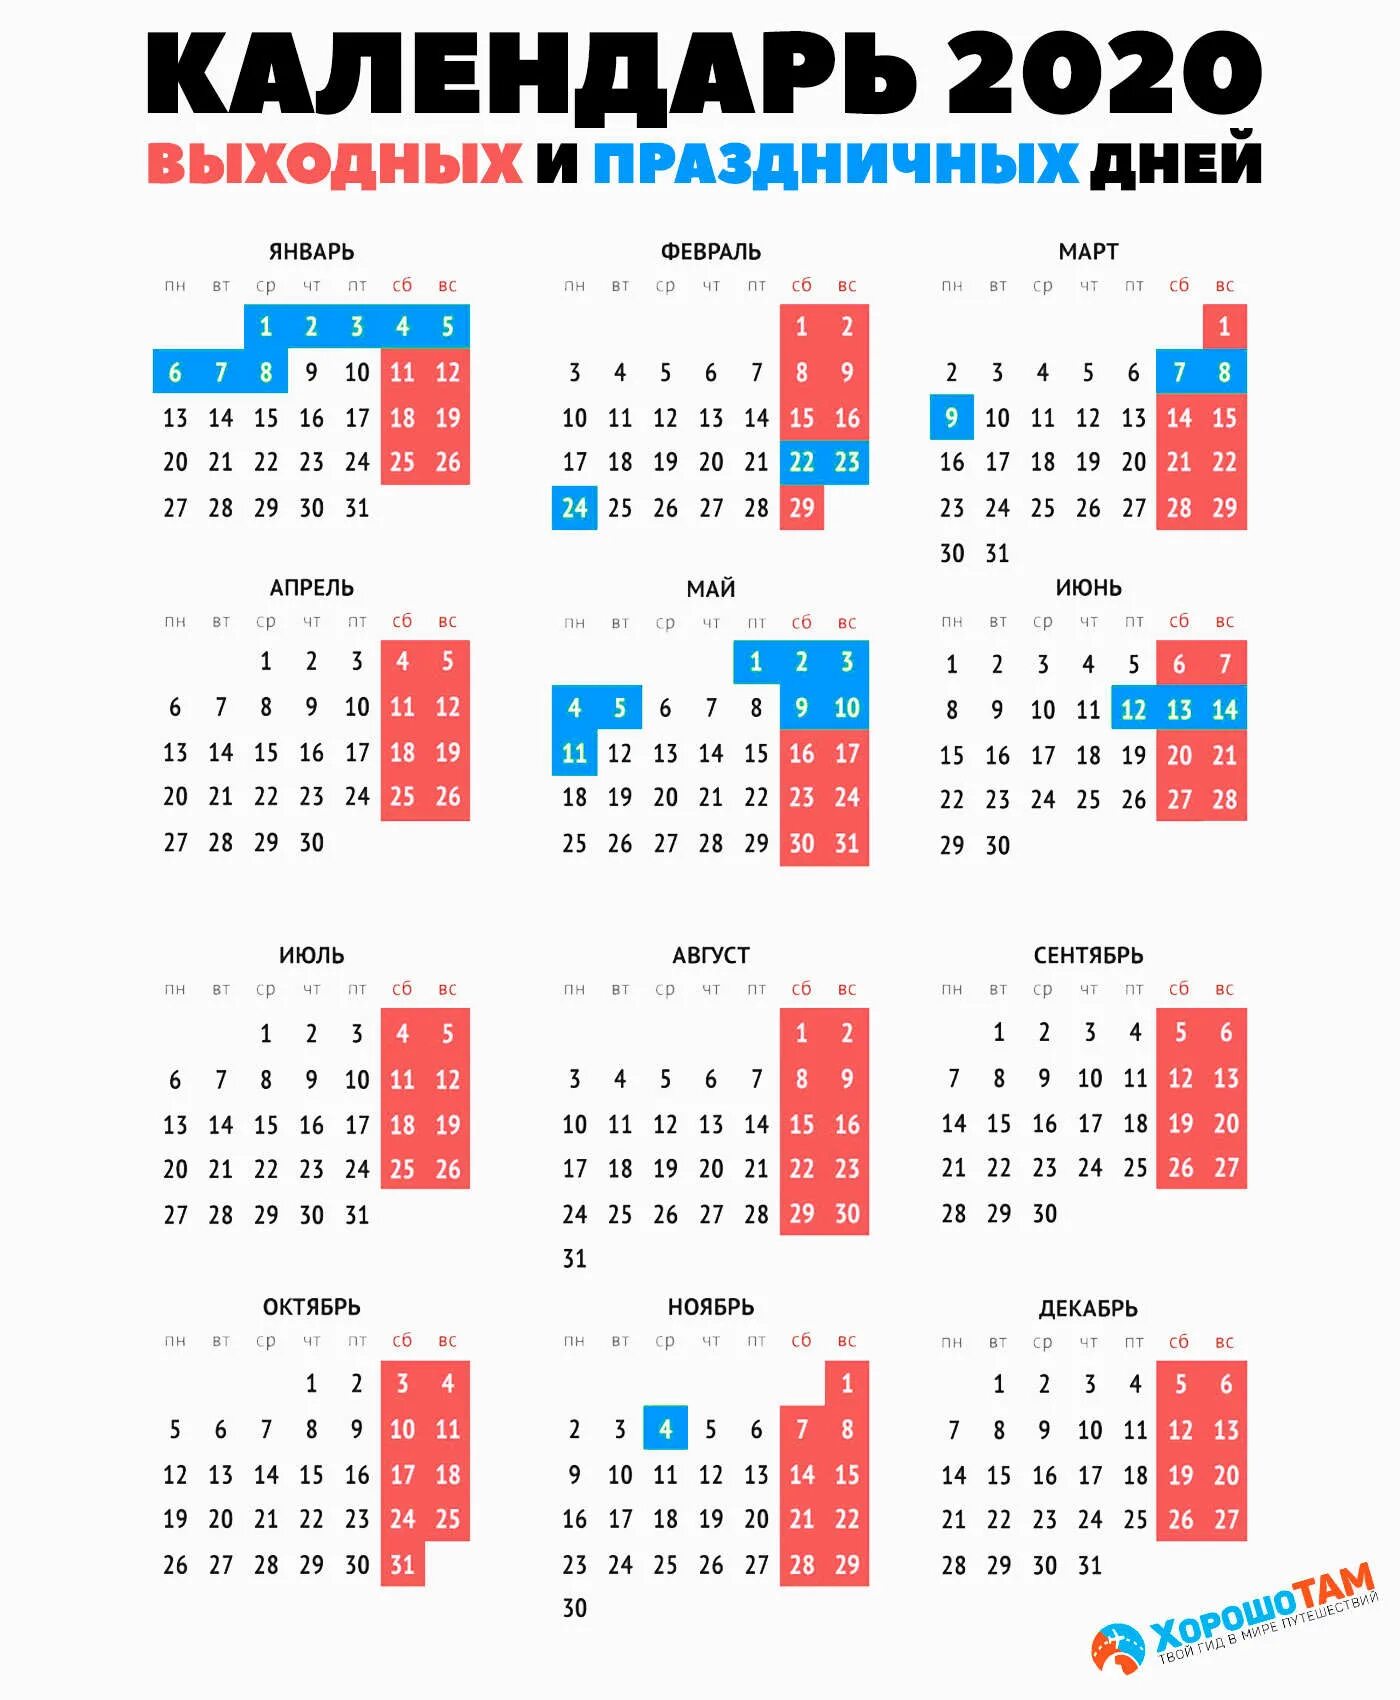 Праздничные дни трудовой календарь. Праздничные дни в 2020 году в России календарь. Календарь 2020г.по месяцам с праздничными и выходными днями. Календарь 2020 года с праздничными днями и выходными. Выходные и нерабочие праздничные дни в 2020 году.